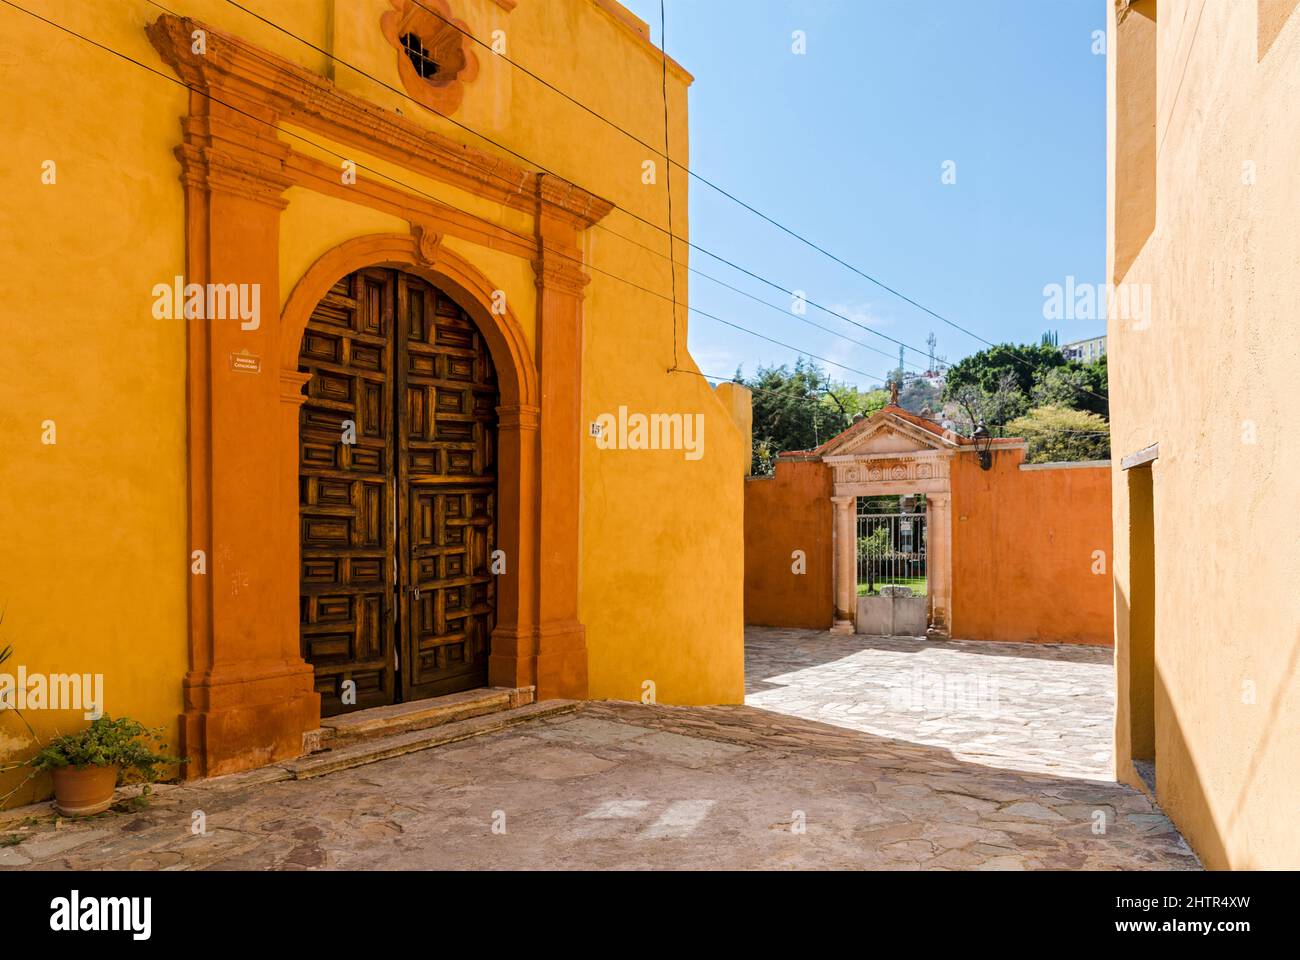 Mexiko, Guanajuato, Guanajuato, spanisches Gebäude aus der Kolonialzeit in gelben Farben Stockfoto